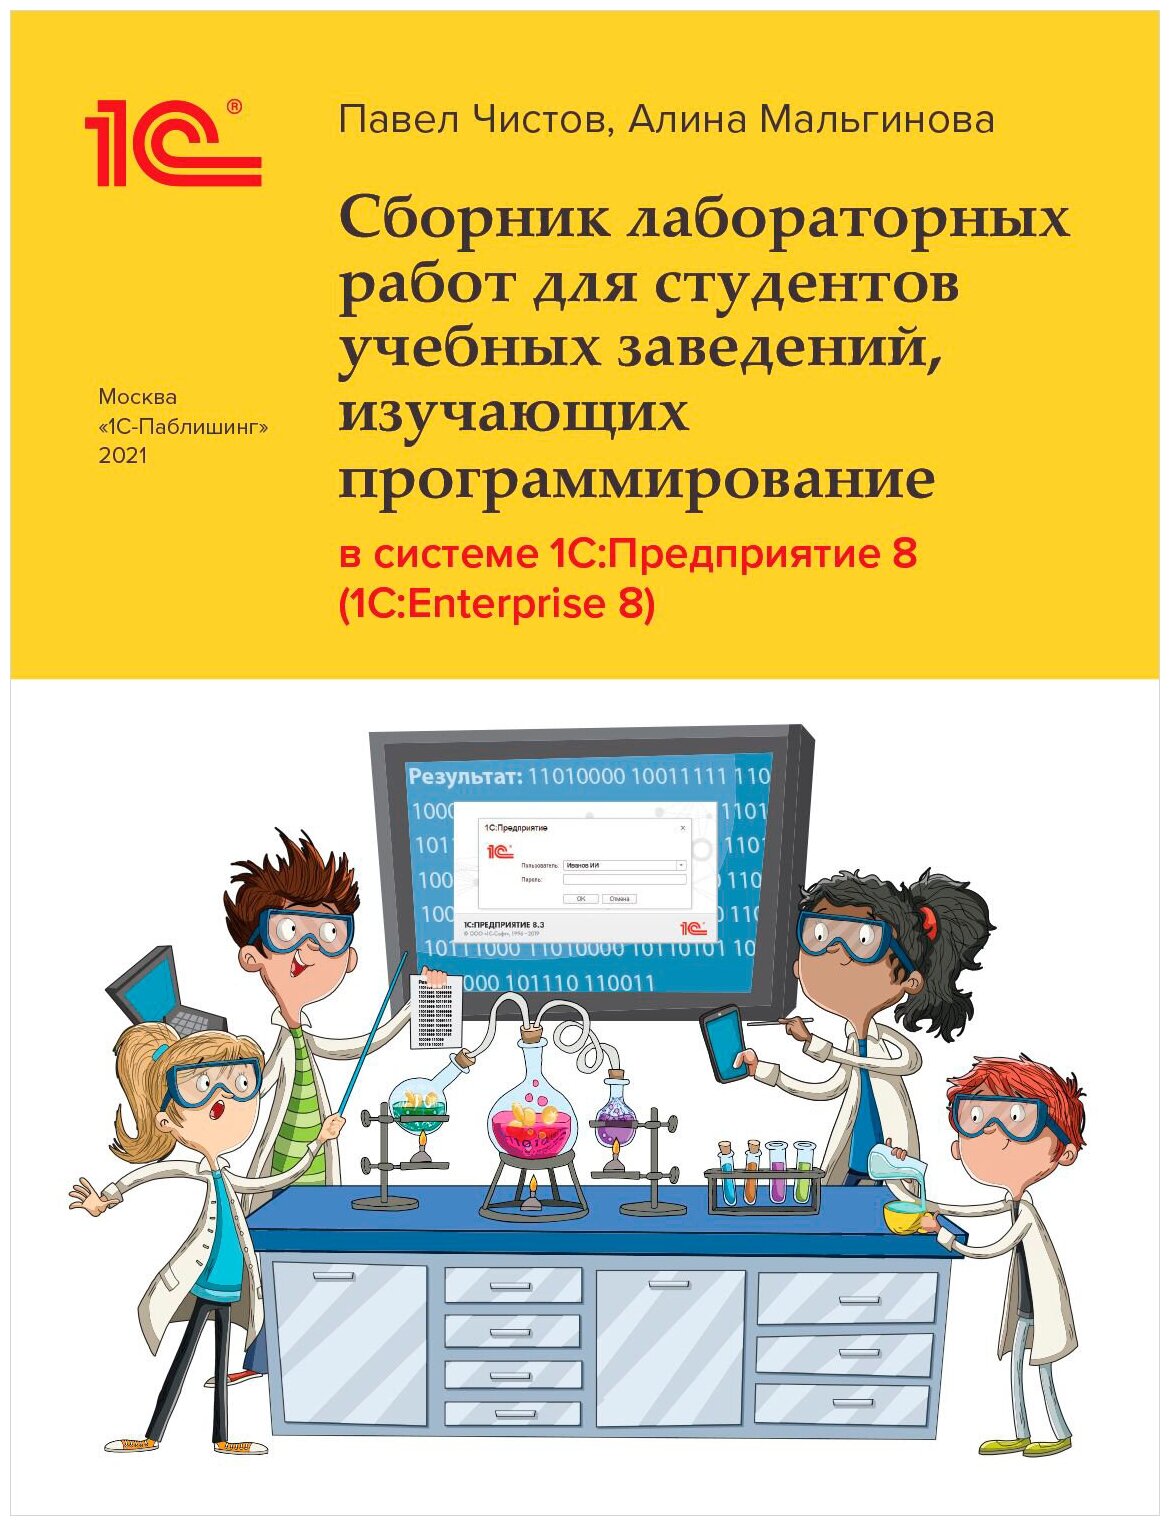 Сборник лабораторных работ для студентов учебных заведений, изучающих программирование в системе 1С: Предприятие (1С: Enterprise)